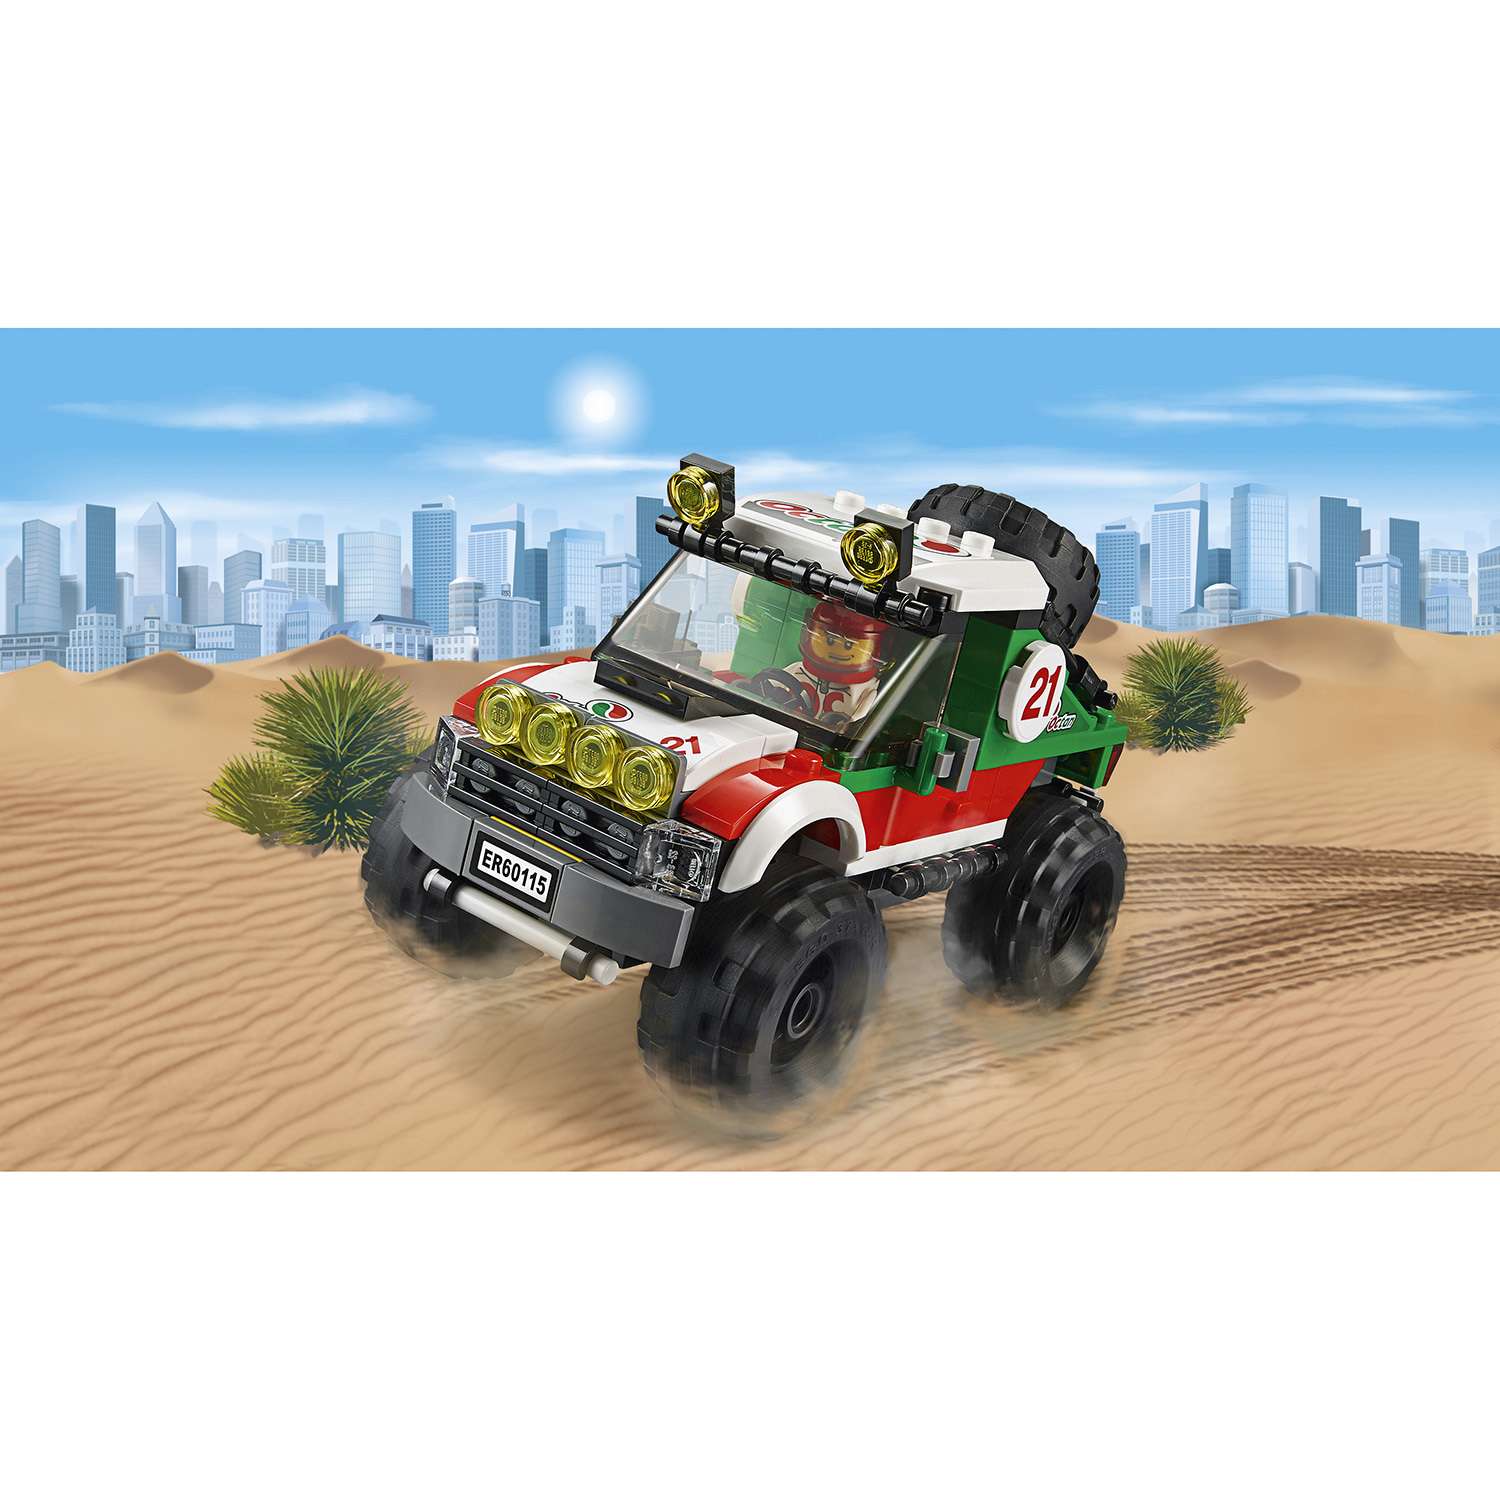 Конструктор LEGO City Great Vehicles Внедорожник 4x4 (60115) - фото 10